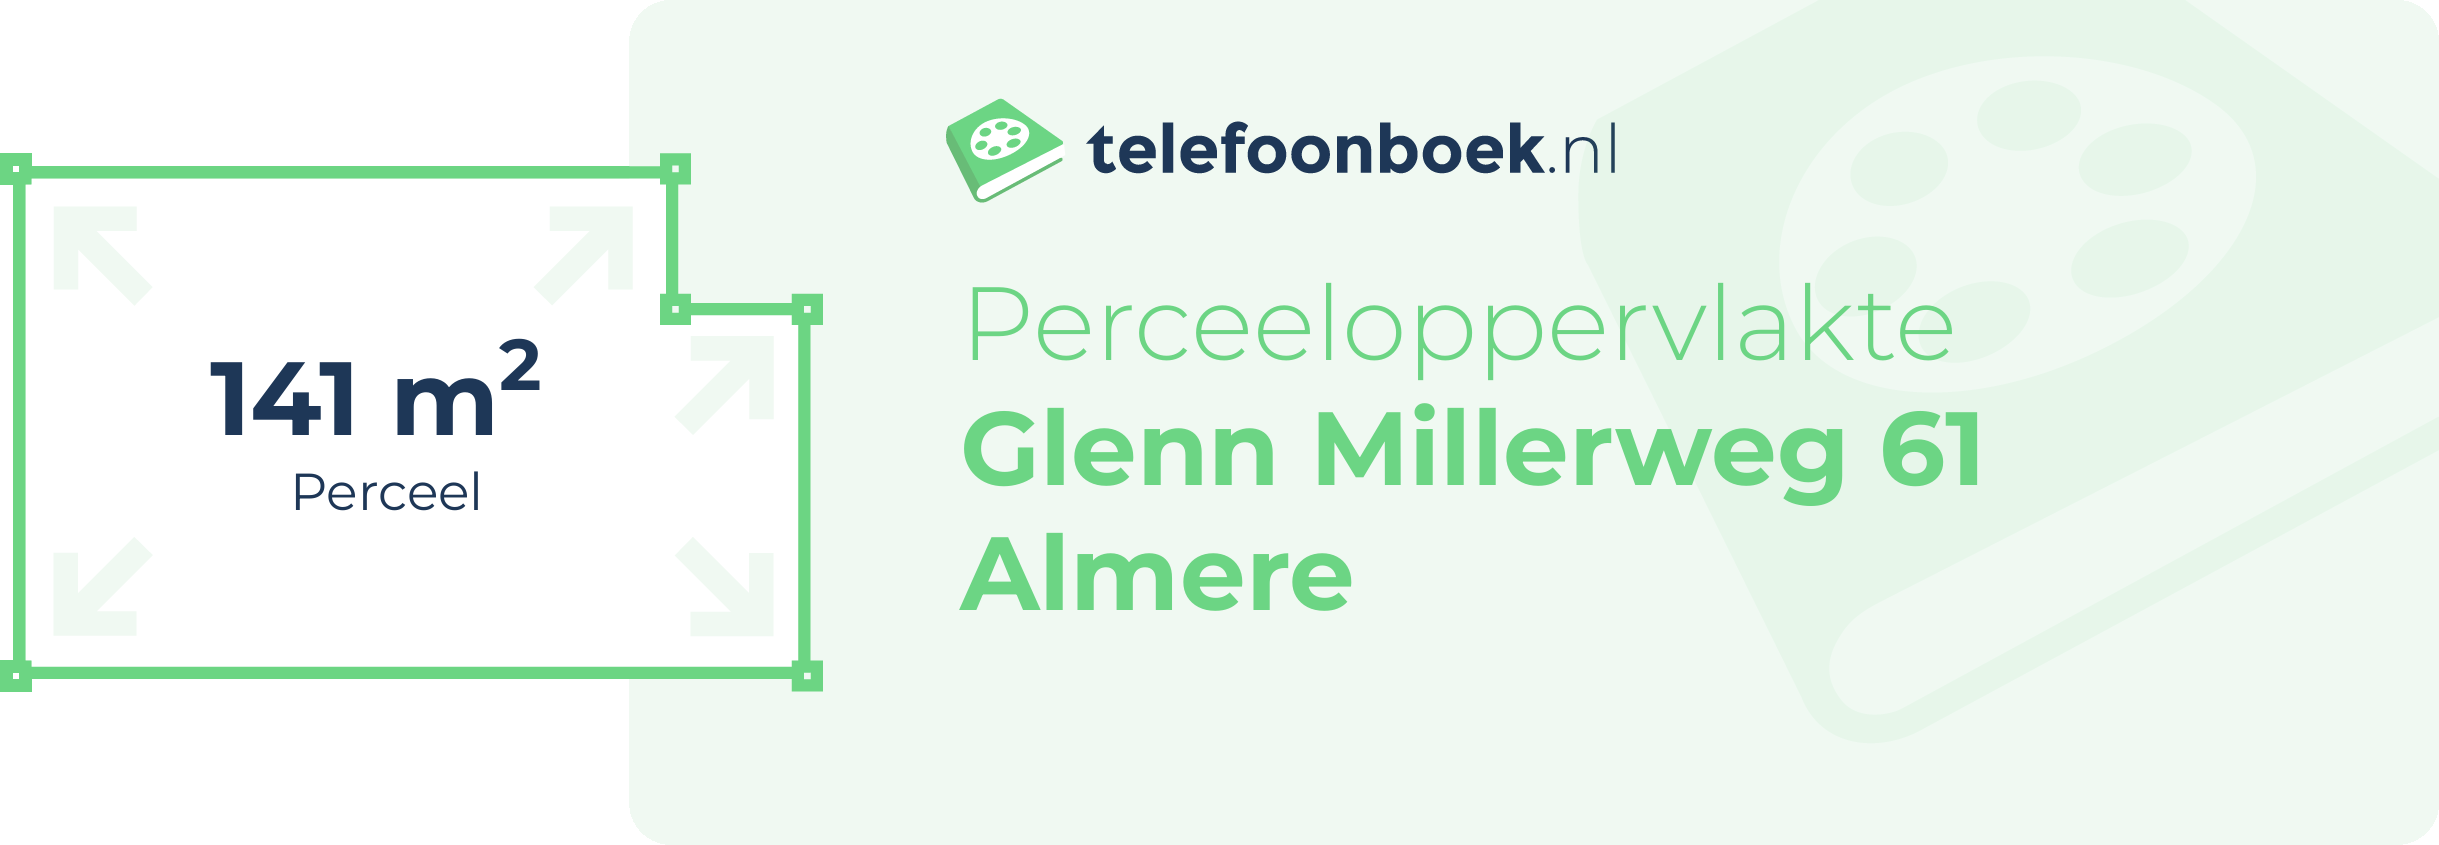 Perceeloppervlakte Glenn Millerweg 61 Almere